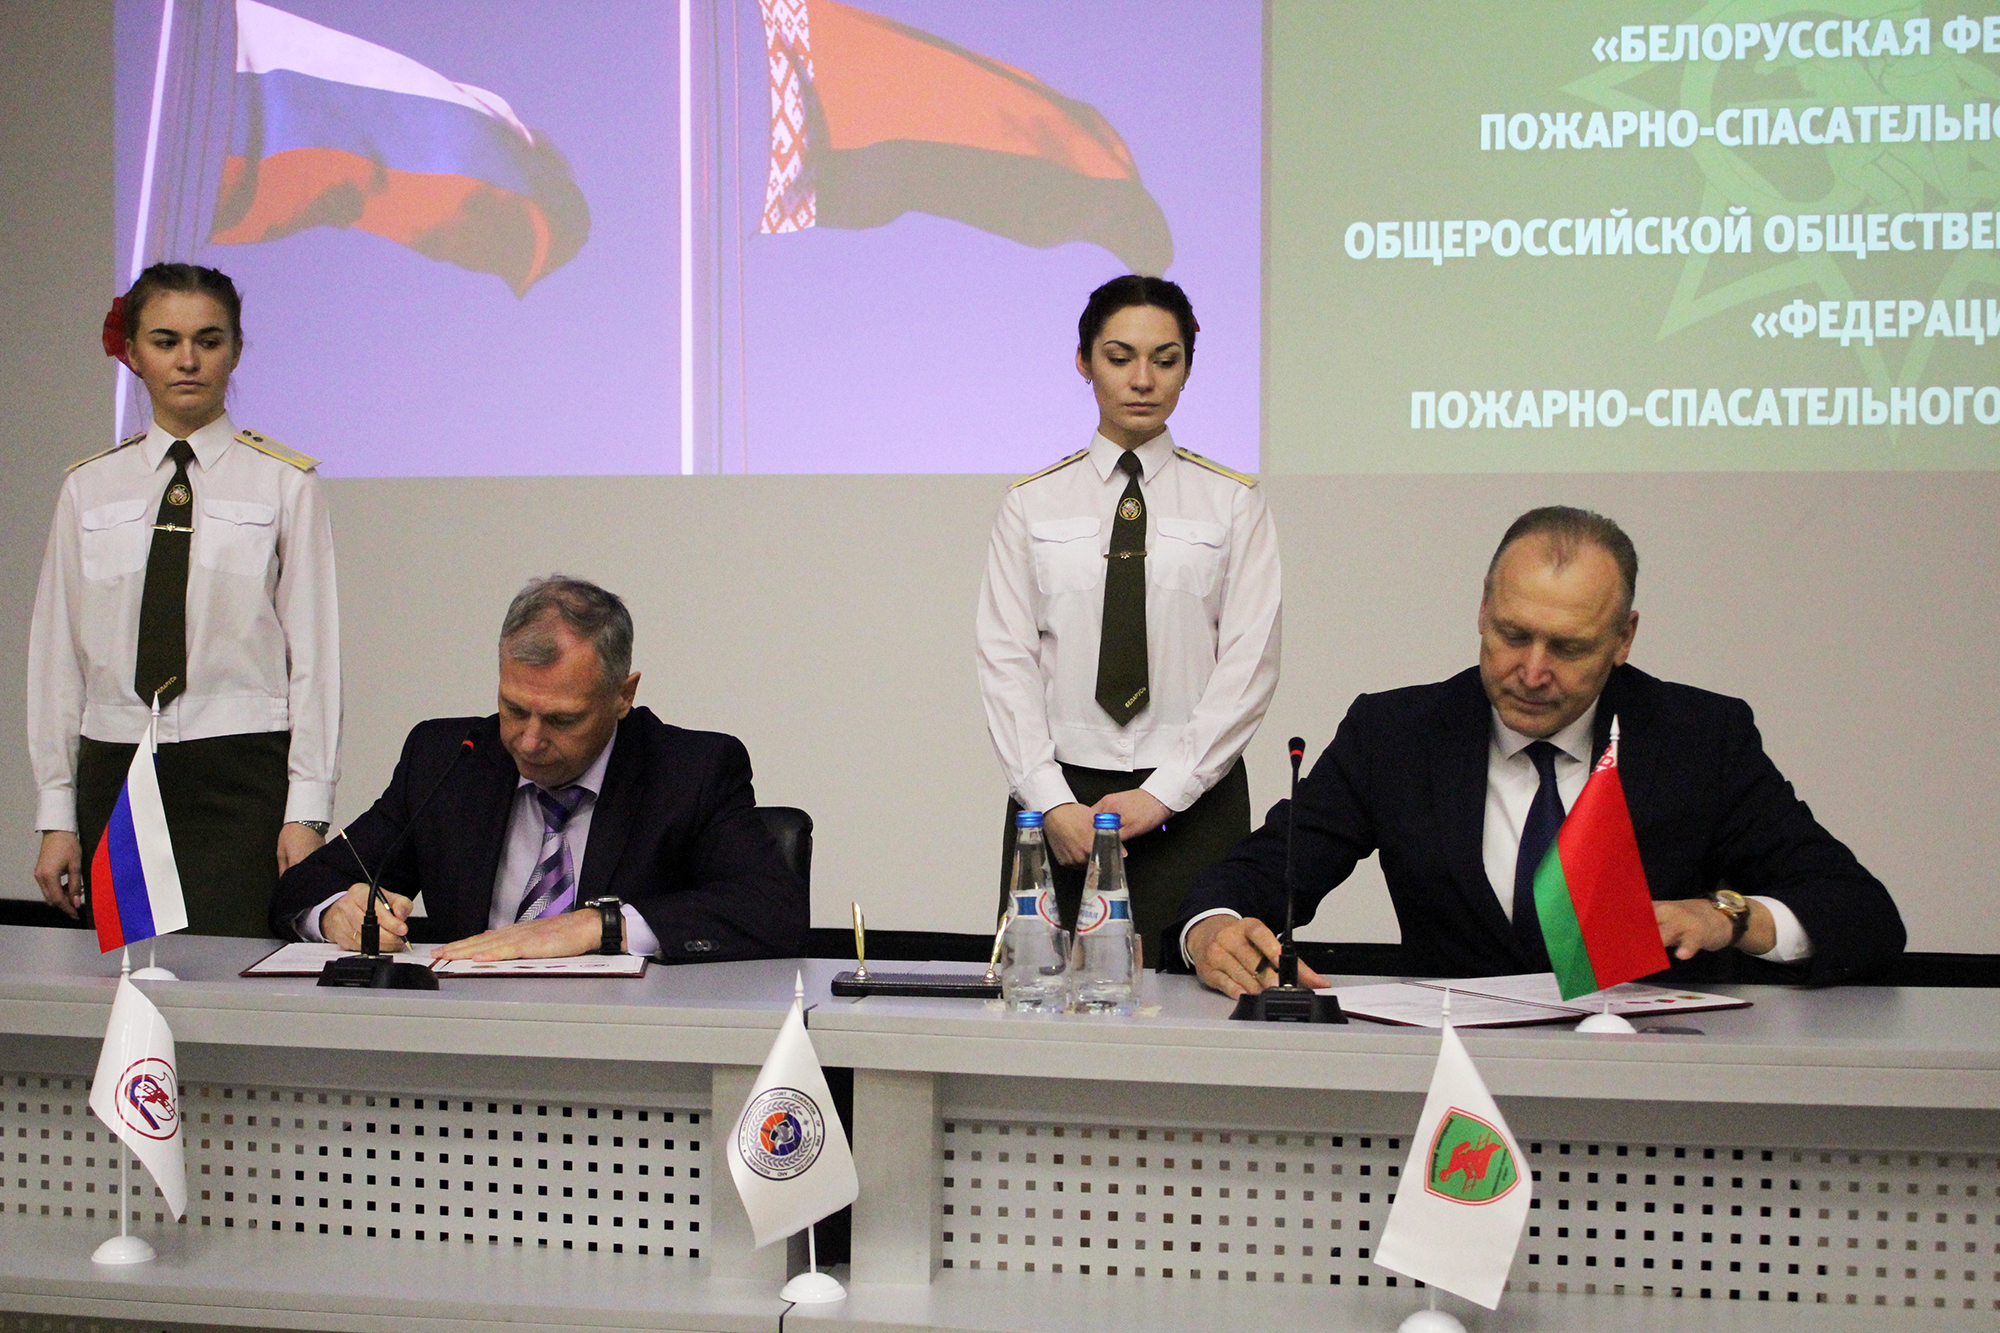 Белорусская и Российская федерации пожарно-спасательного спорта подписали соглашение о сотрудничестве